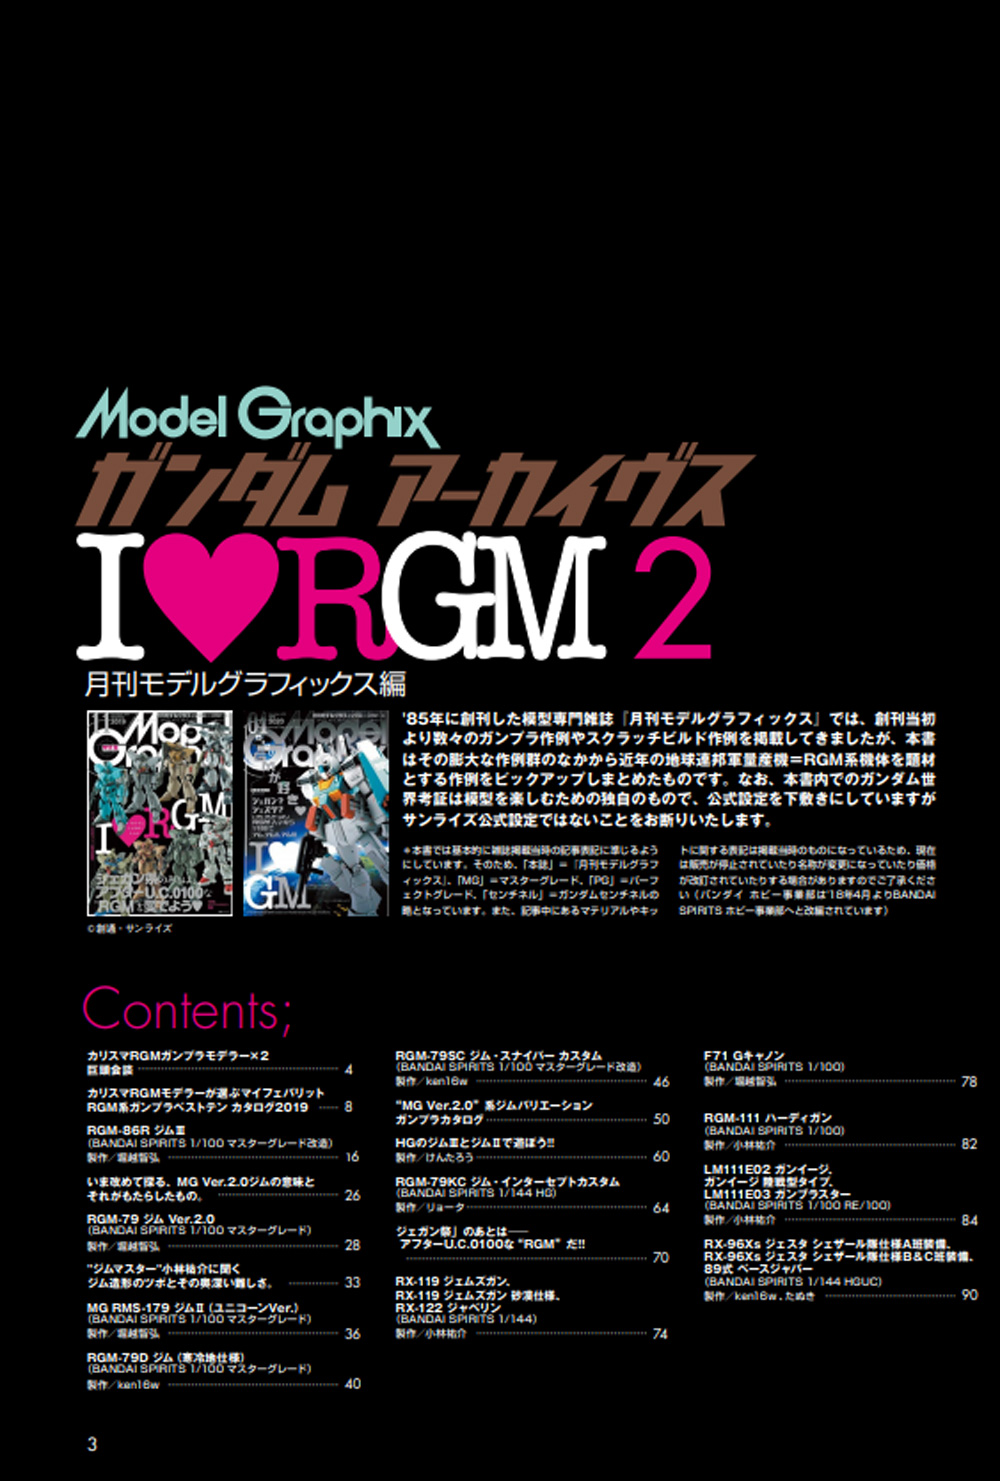 ガンダムアーカイヴス I Love RGM2 本 (大日本絵画 モデルグラフィックス アーカイヴス No.23319-4) 商品画像_1